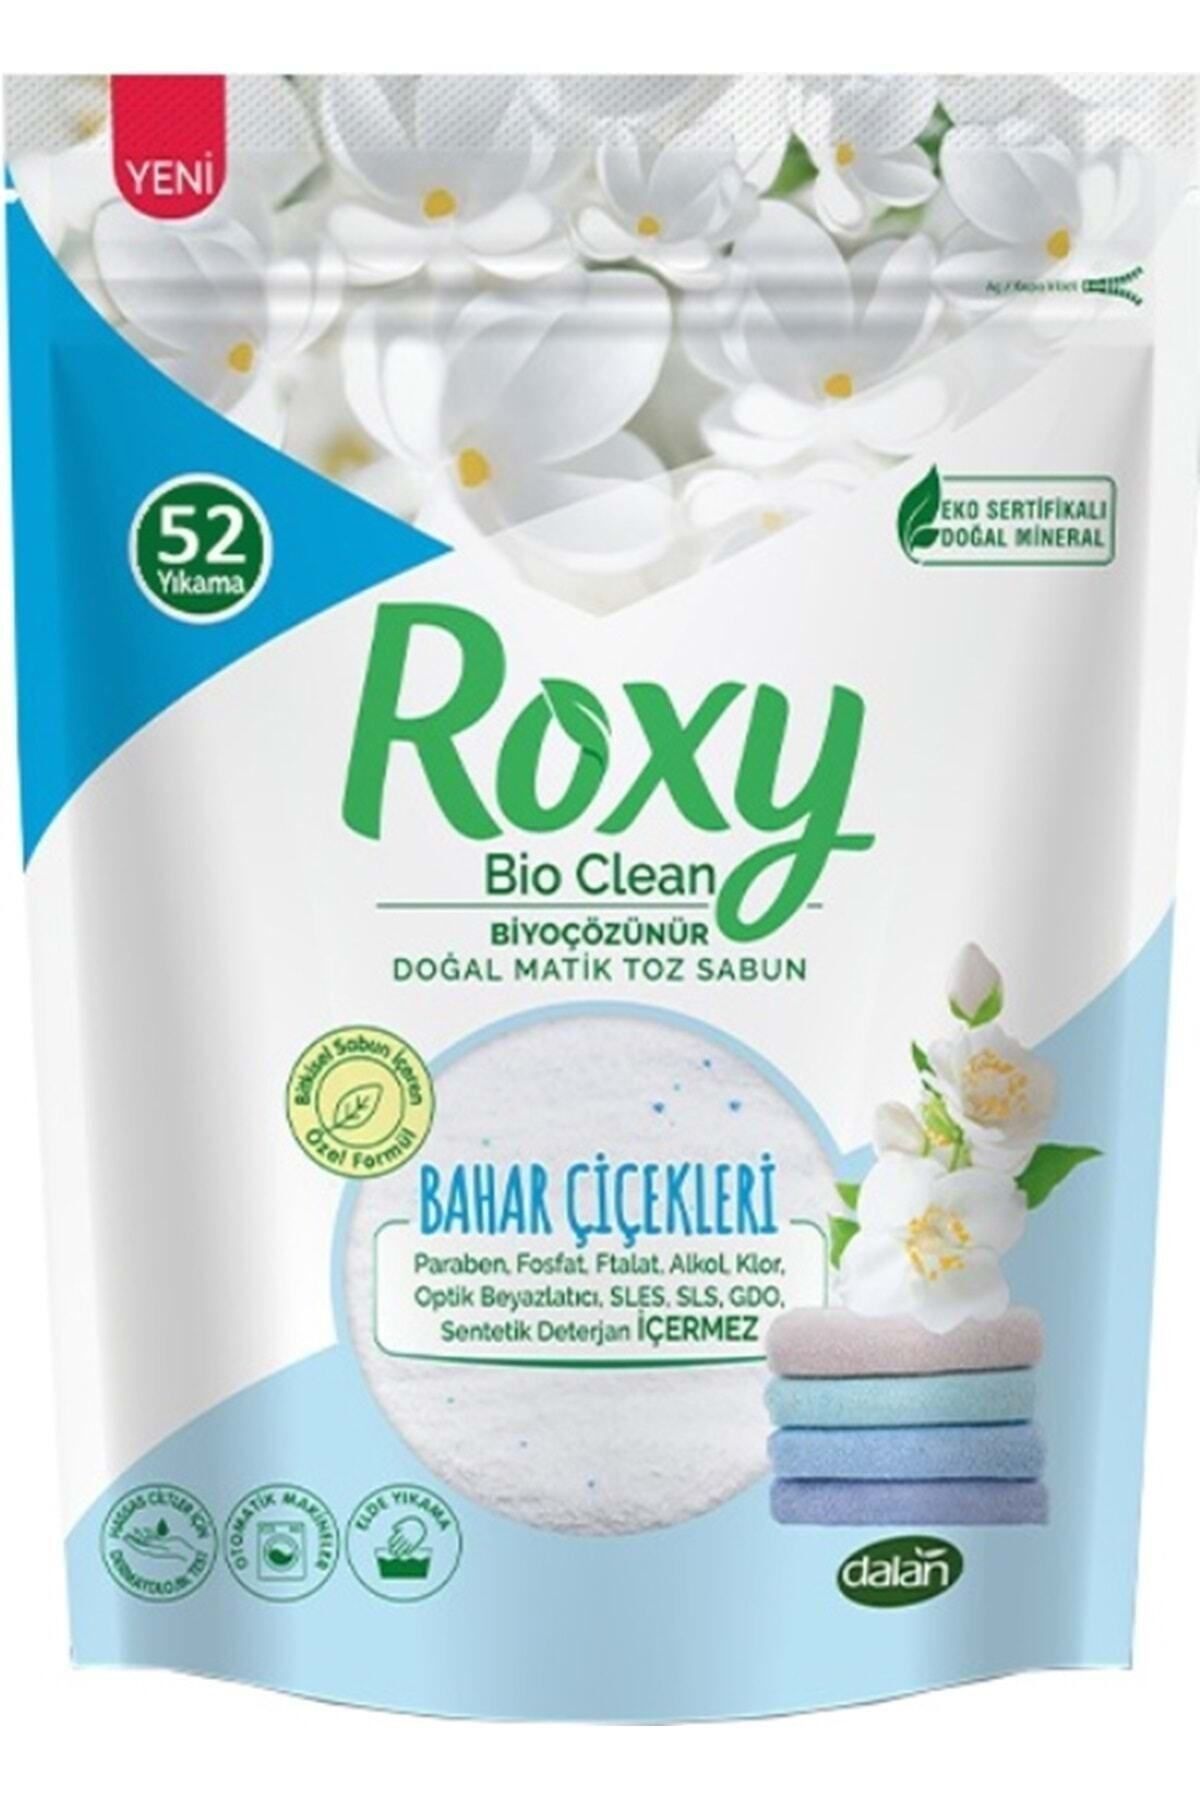 Dalan Roxy Bio Clean Matik Toz Sabun Bahar Çiçekleri 1600 gr